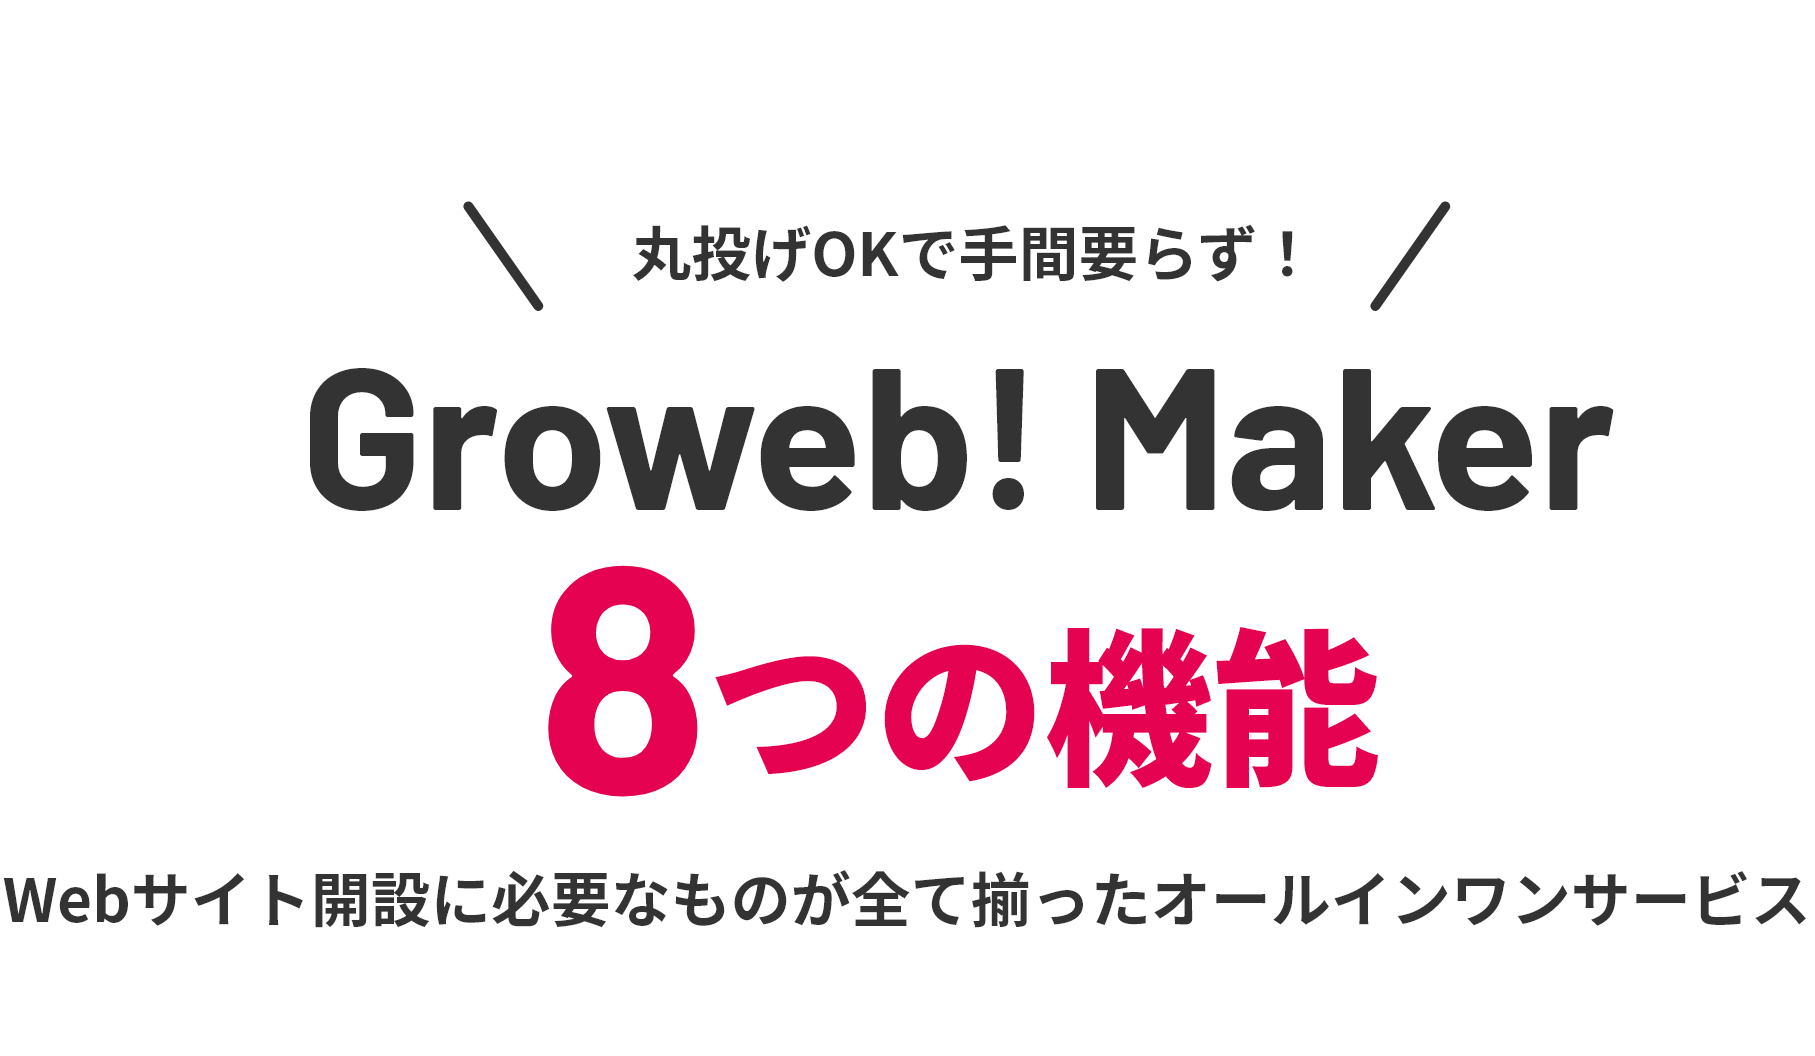 丸投げOKで手間要らず！ Groweb! Maker 8つの機能 Webサイト開設に必要なものがすべて揃ったオールインワンサービス